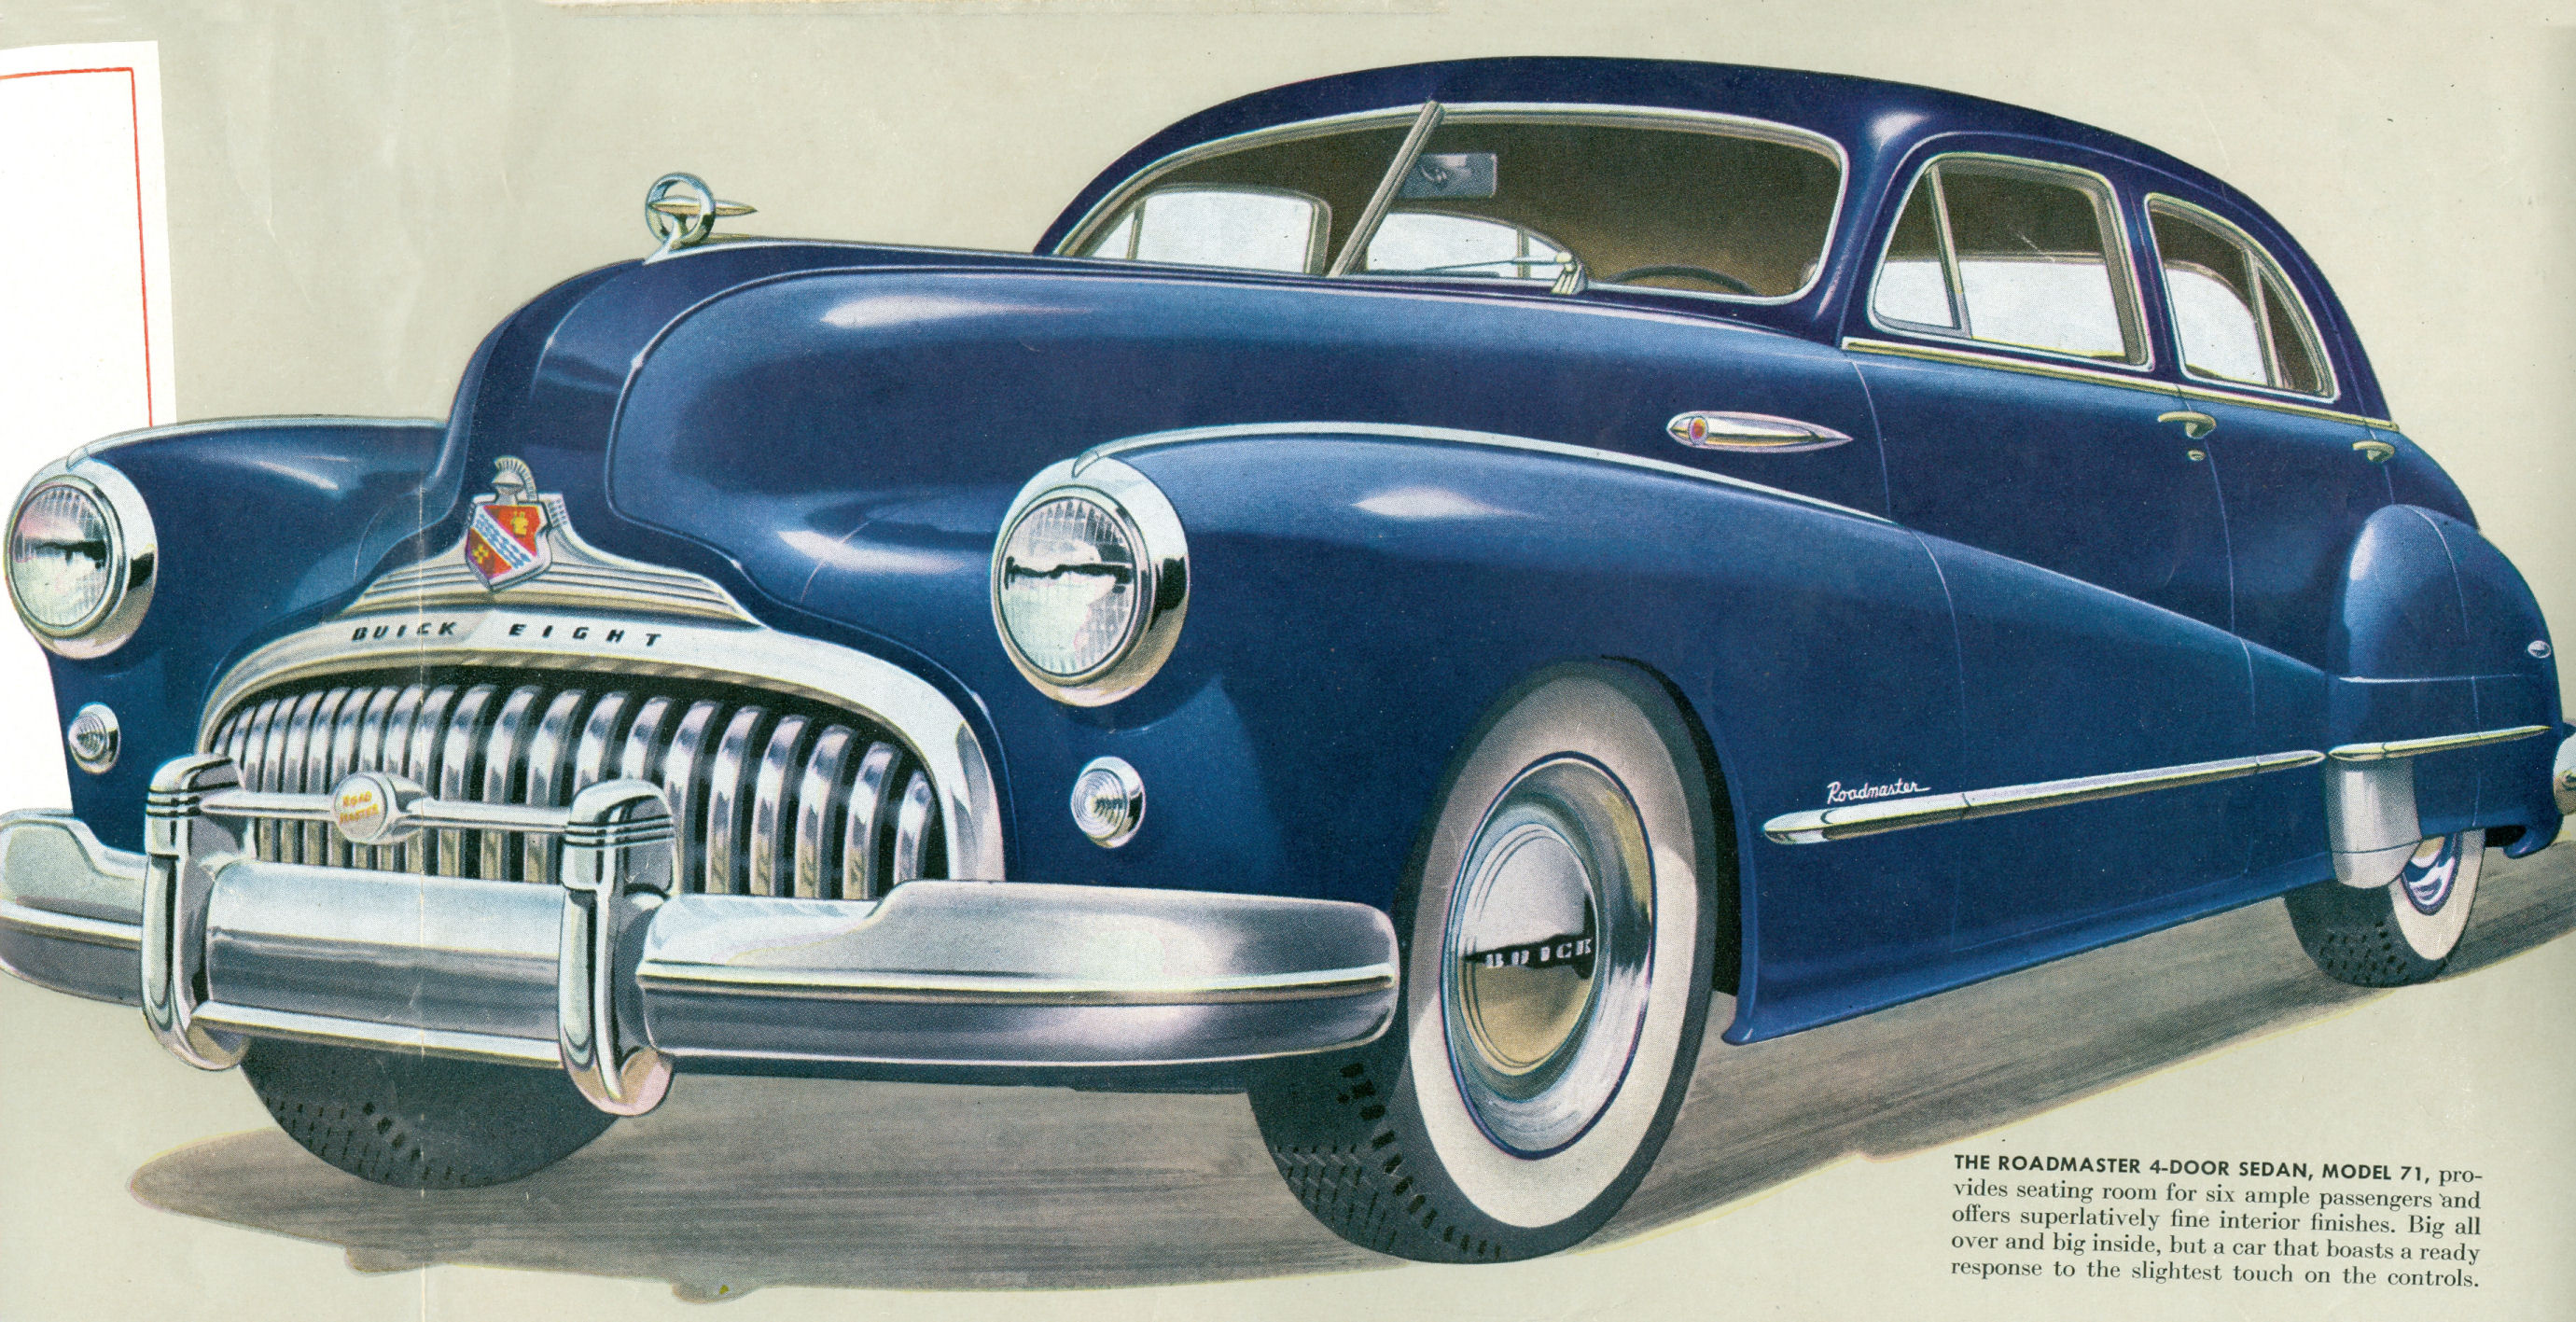 1948 Buick  3 